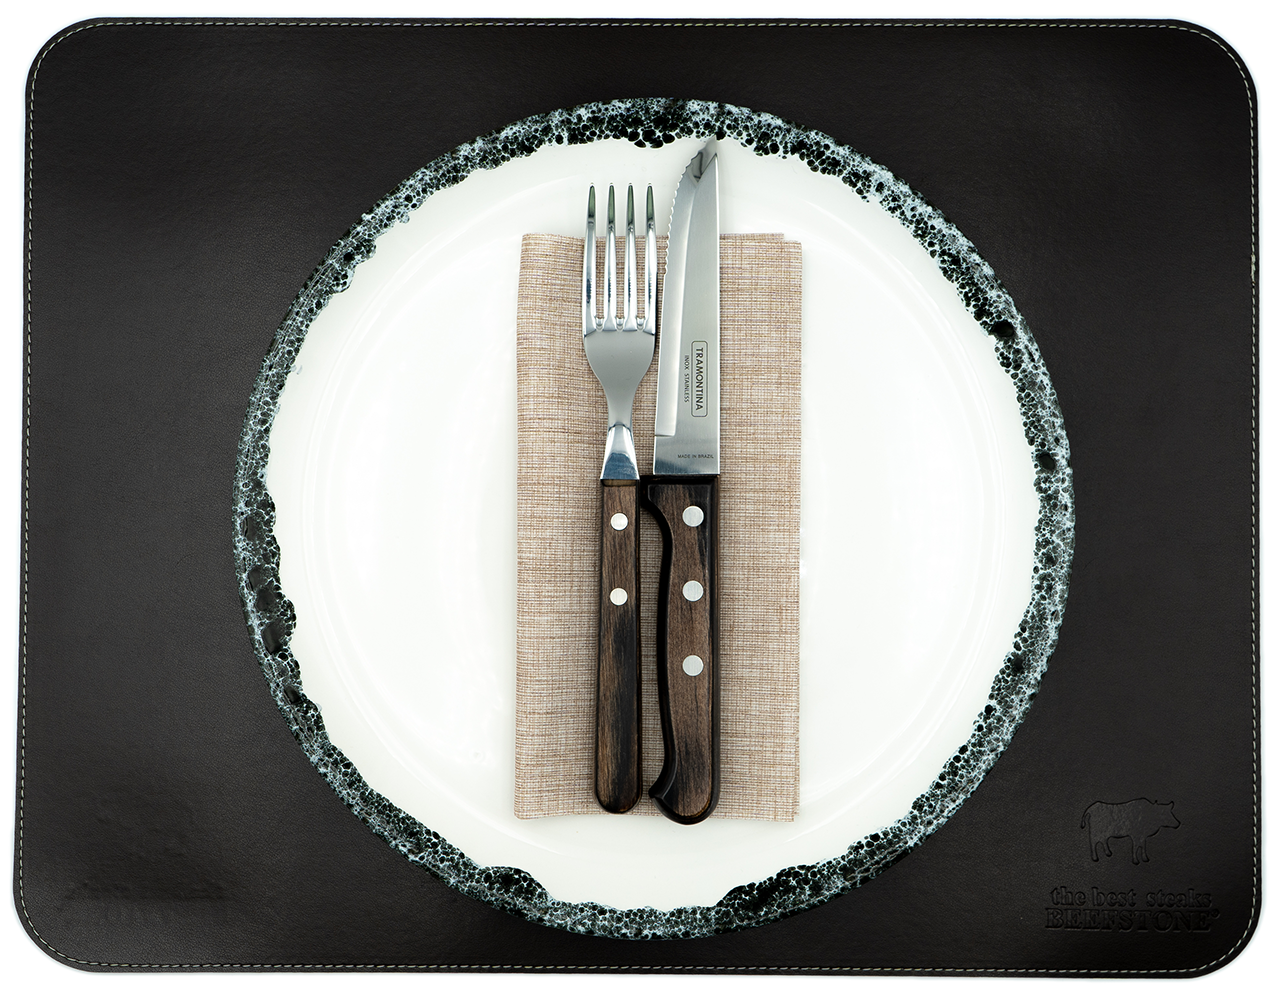 Original Beefstone® Tischset aus veganem PU Kunstleder - doppelseitig - 44 x 34 cm - Schwarzbraun / Ecru